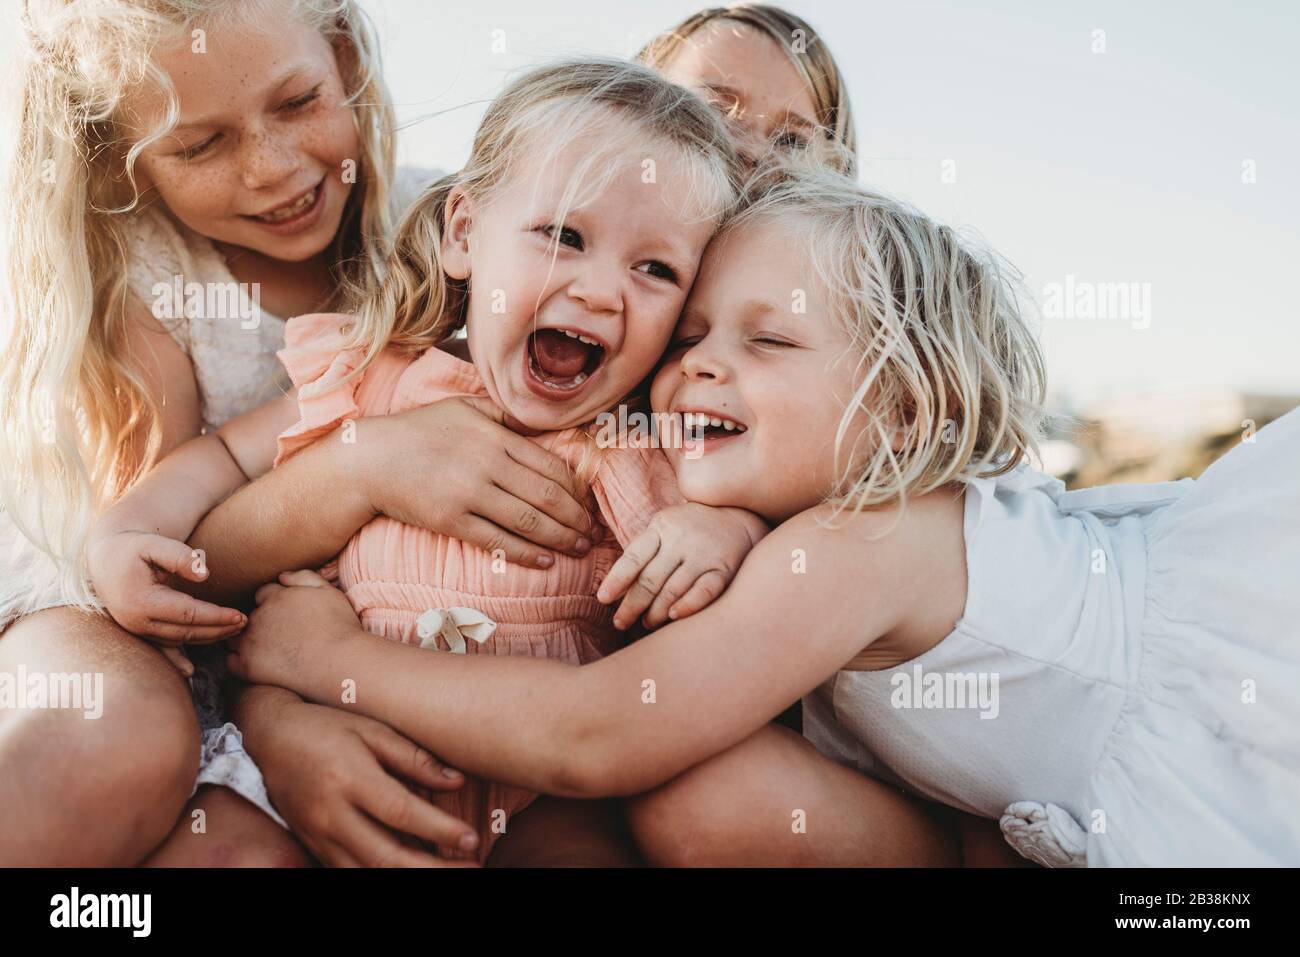 Gros plan sur le rire d'un enfant entouré de jeunes sœurs Banque D'Images